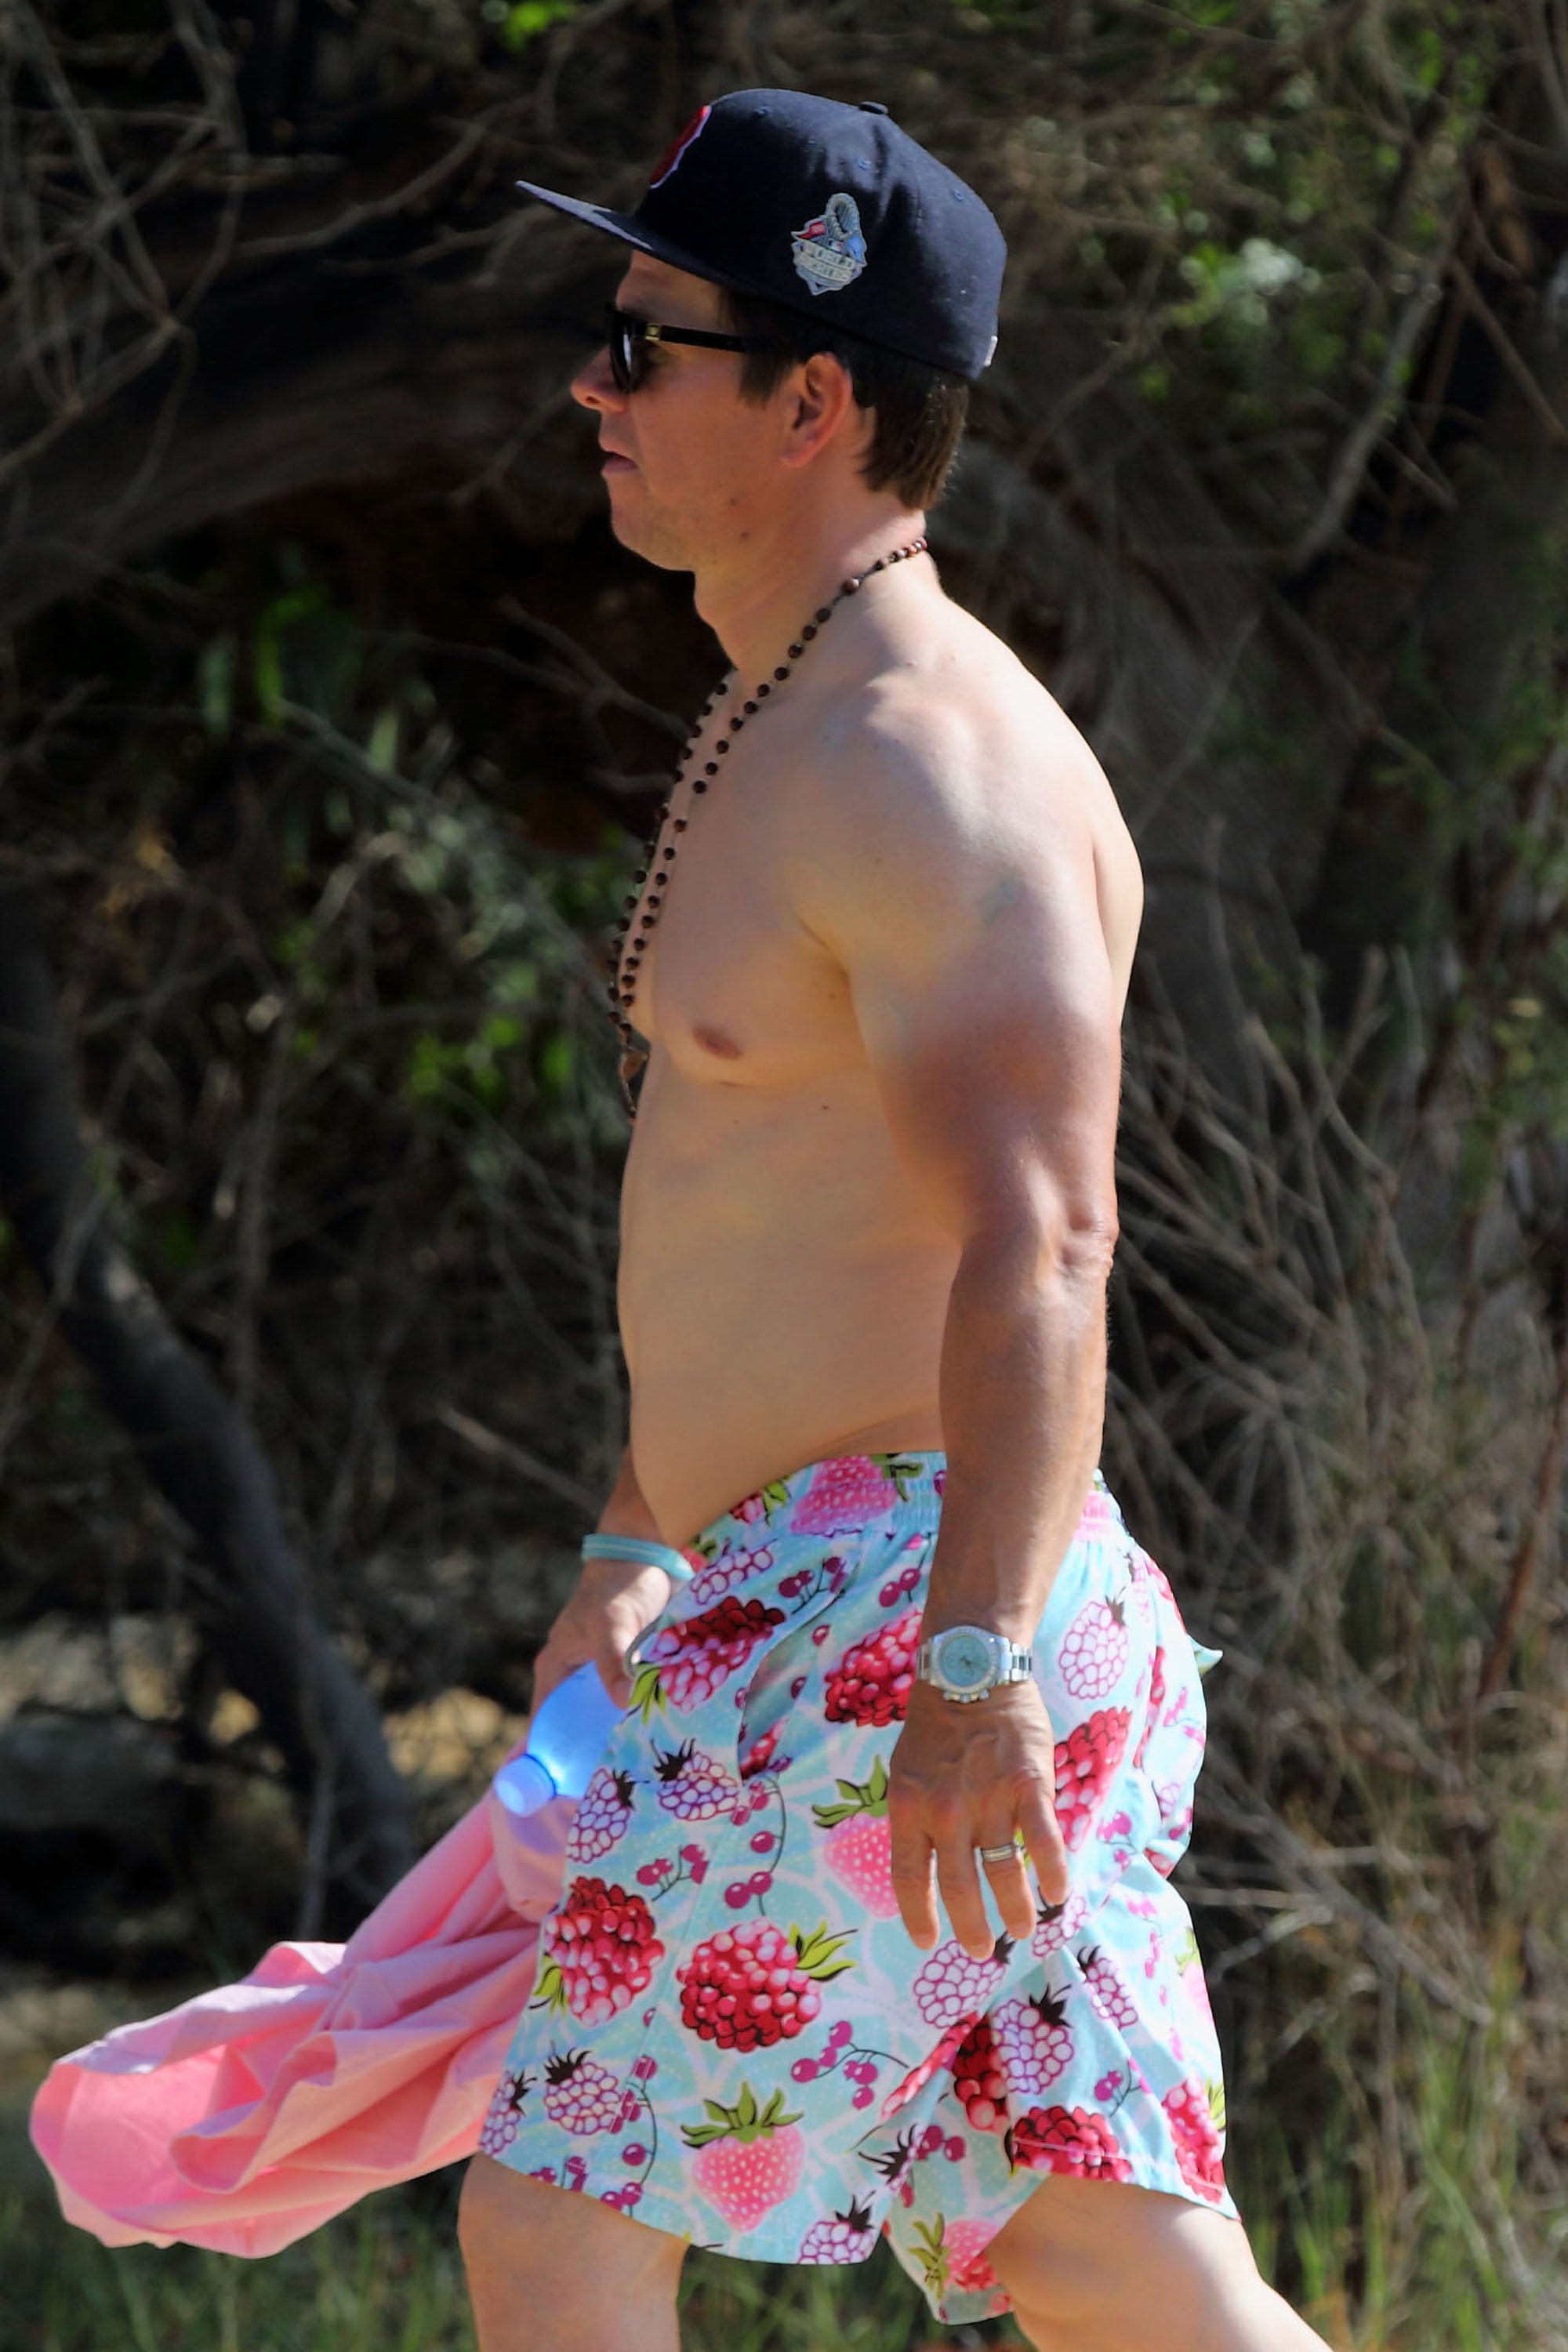 Mark Wahlberg With a Farmer's Tan on the Beach December 2015